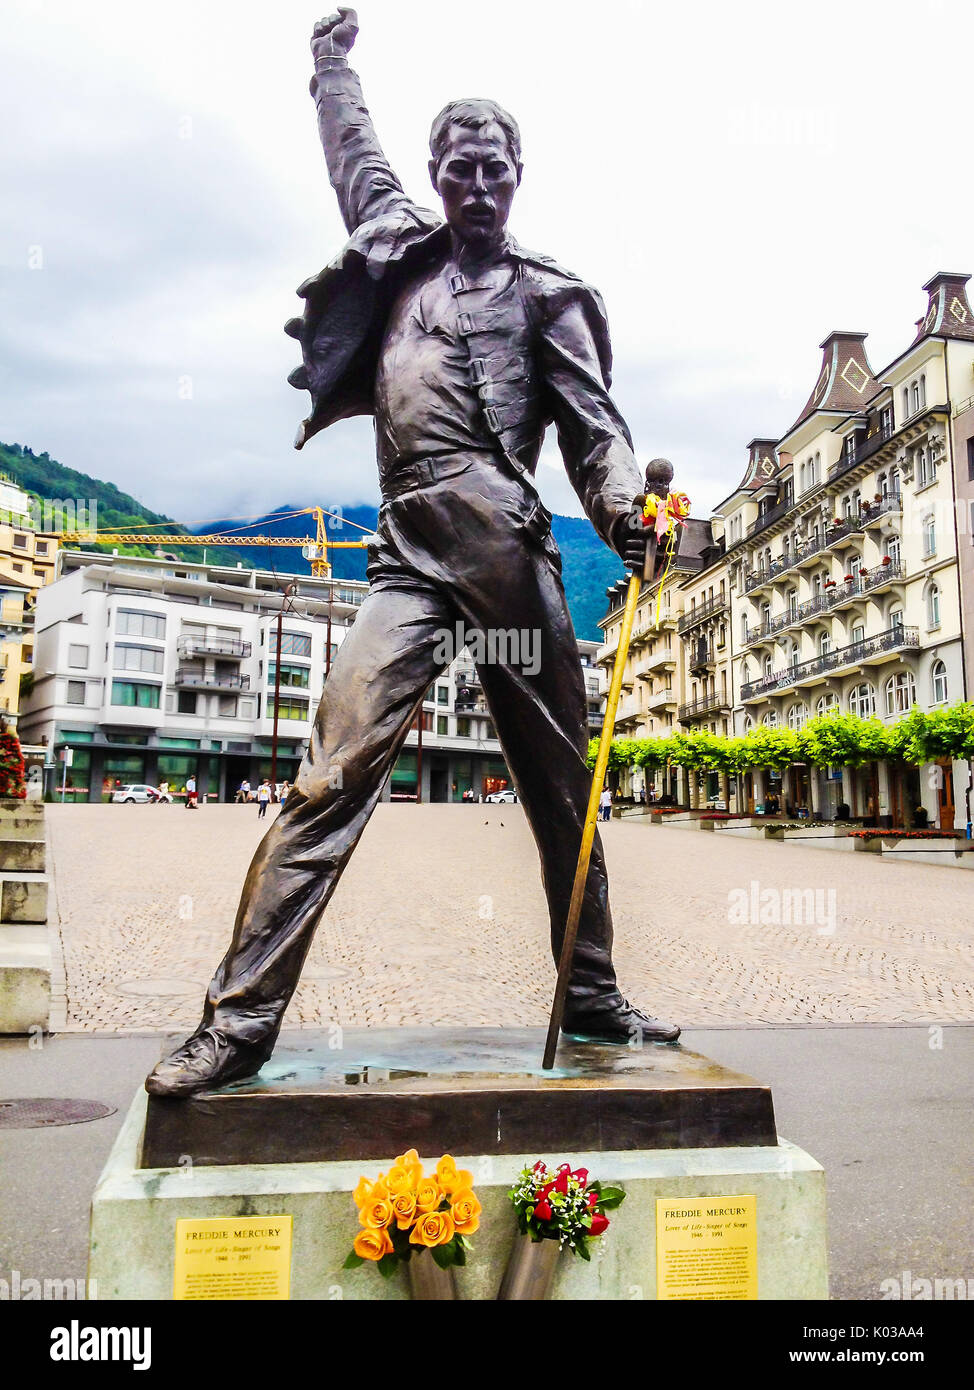 Montreux, Suisse - 26 juin 2012 : Freddie Mercury statue en bronze, une chanteuse et le chanteur principal du groupe de rock Queen, à Genève lac, M Banque D'Images